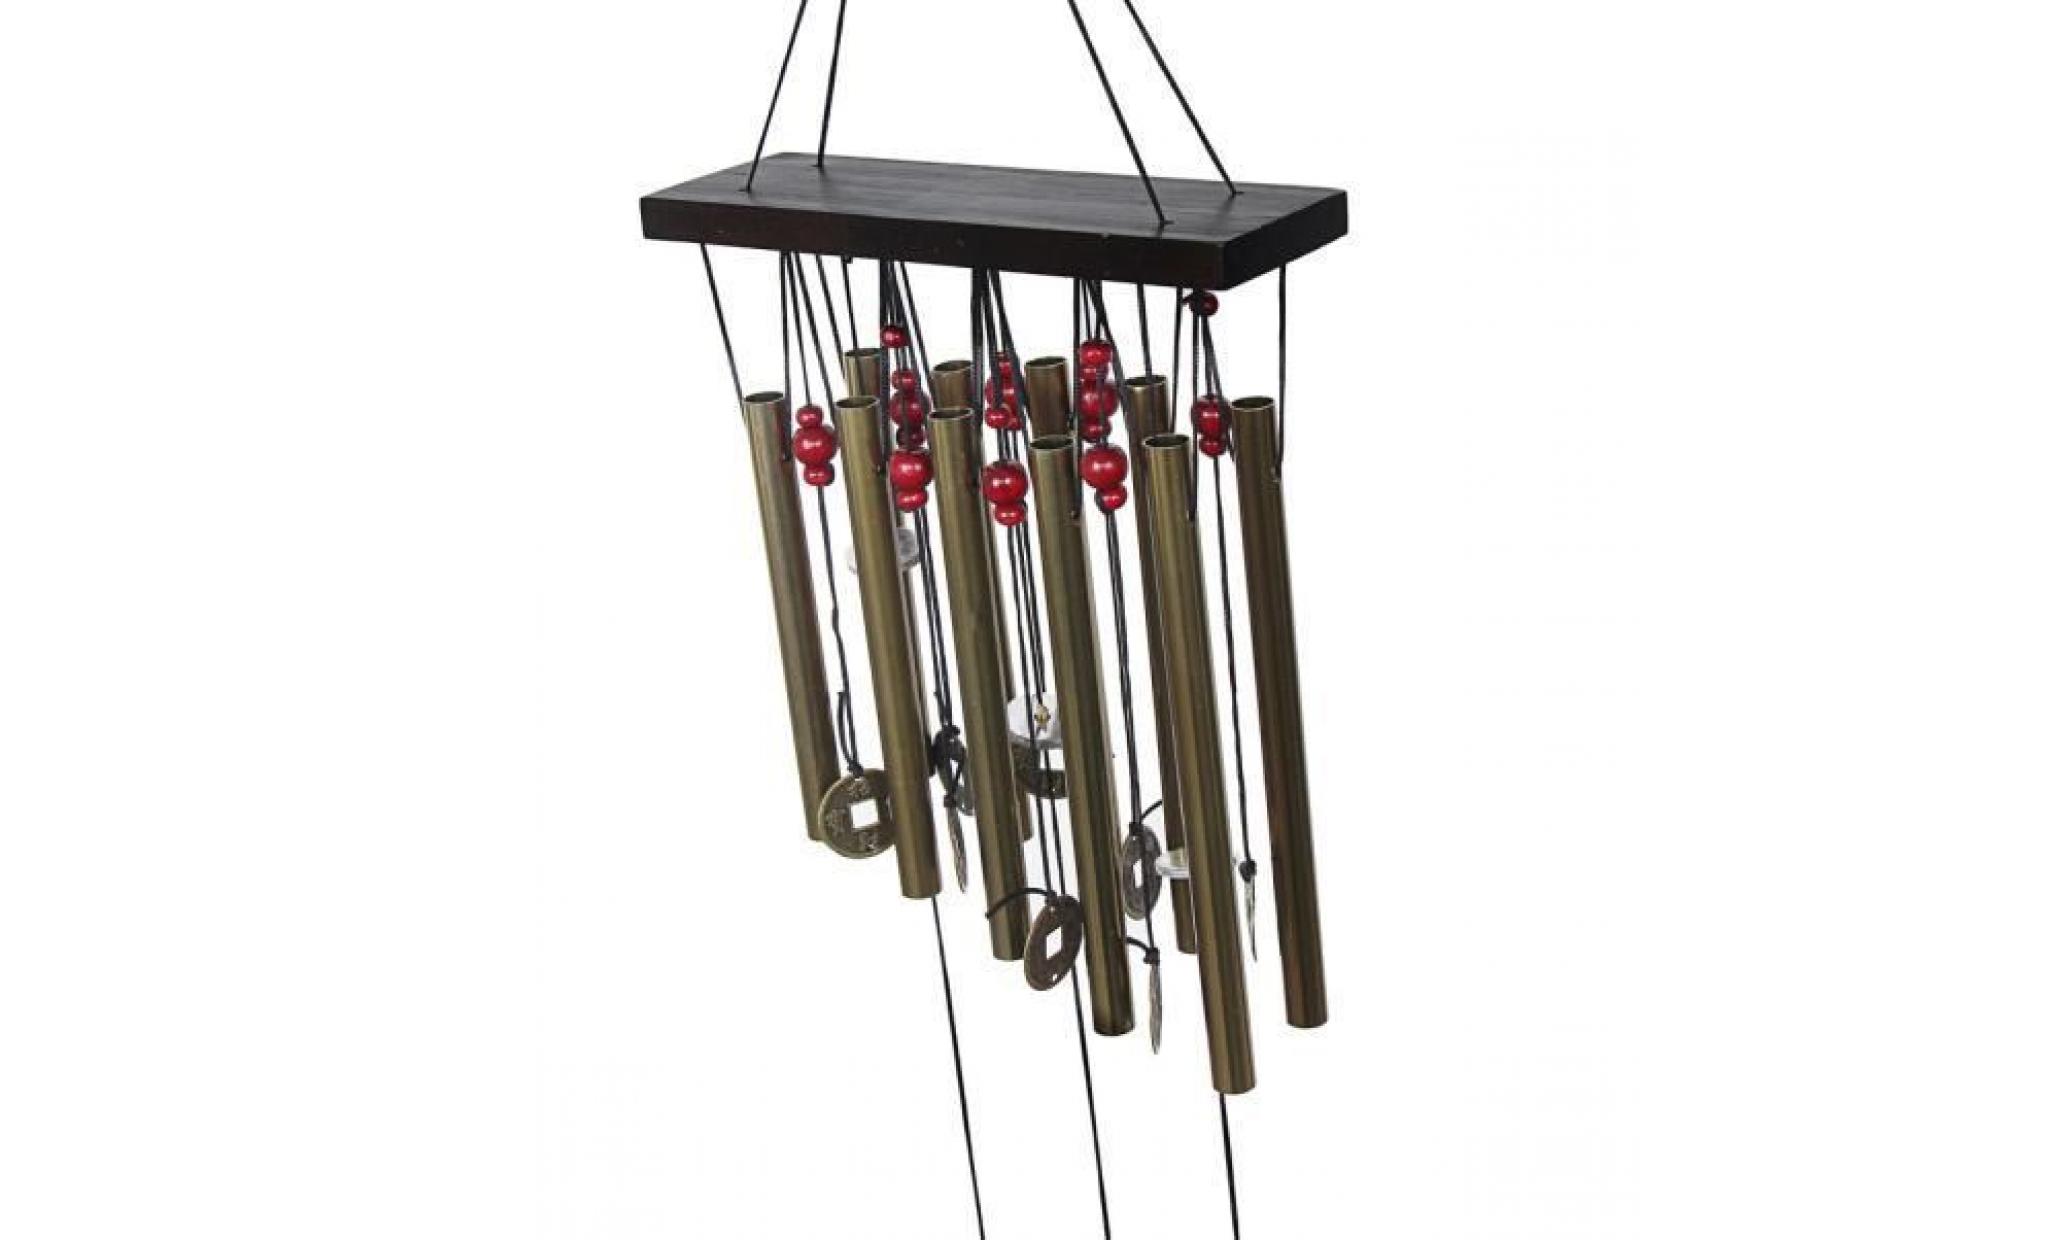 incroyable 10 tubes bois chapelle eglise cloches carillon de vent yard décor wh house595 pas cher